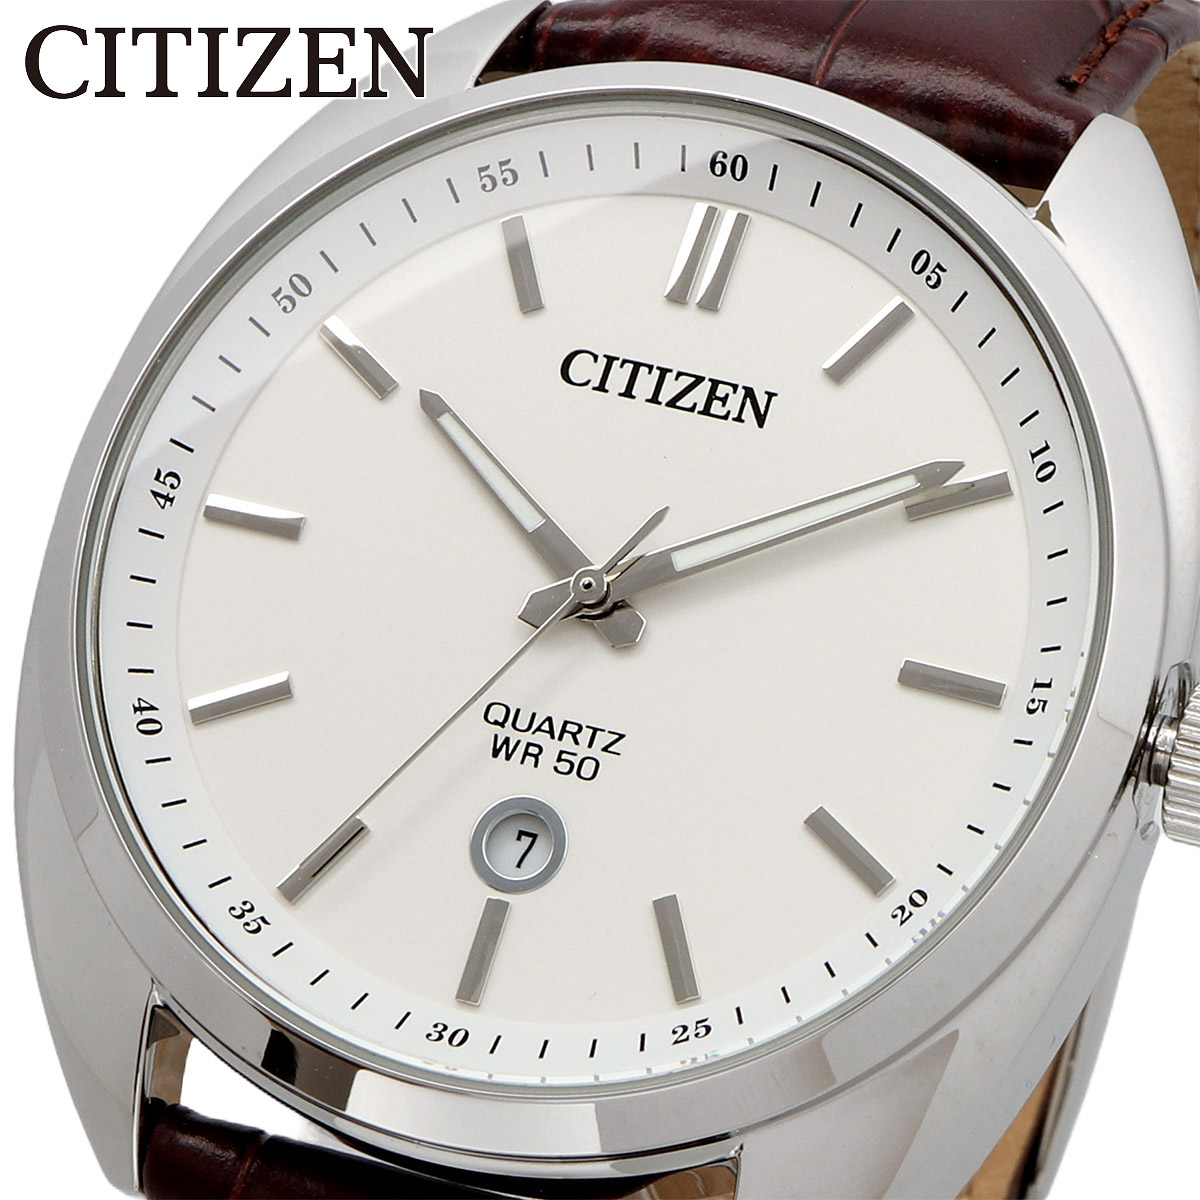 CITIZEN シチズン 腕時計 メンズ 海外モデル クォーツ ビジネス カジュアル  BI5090-09A